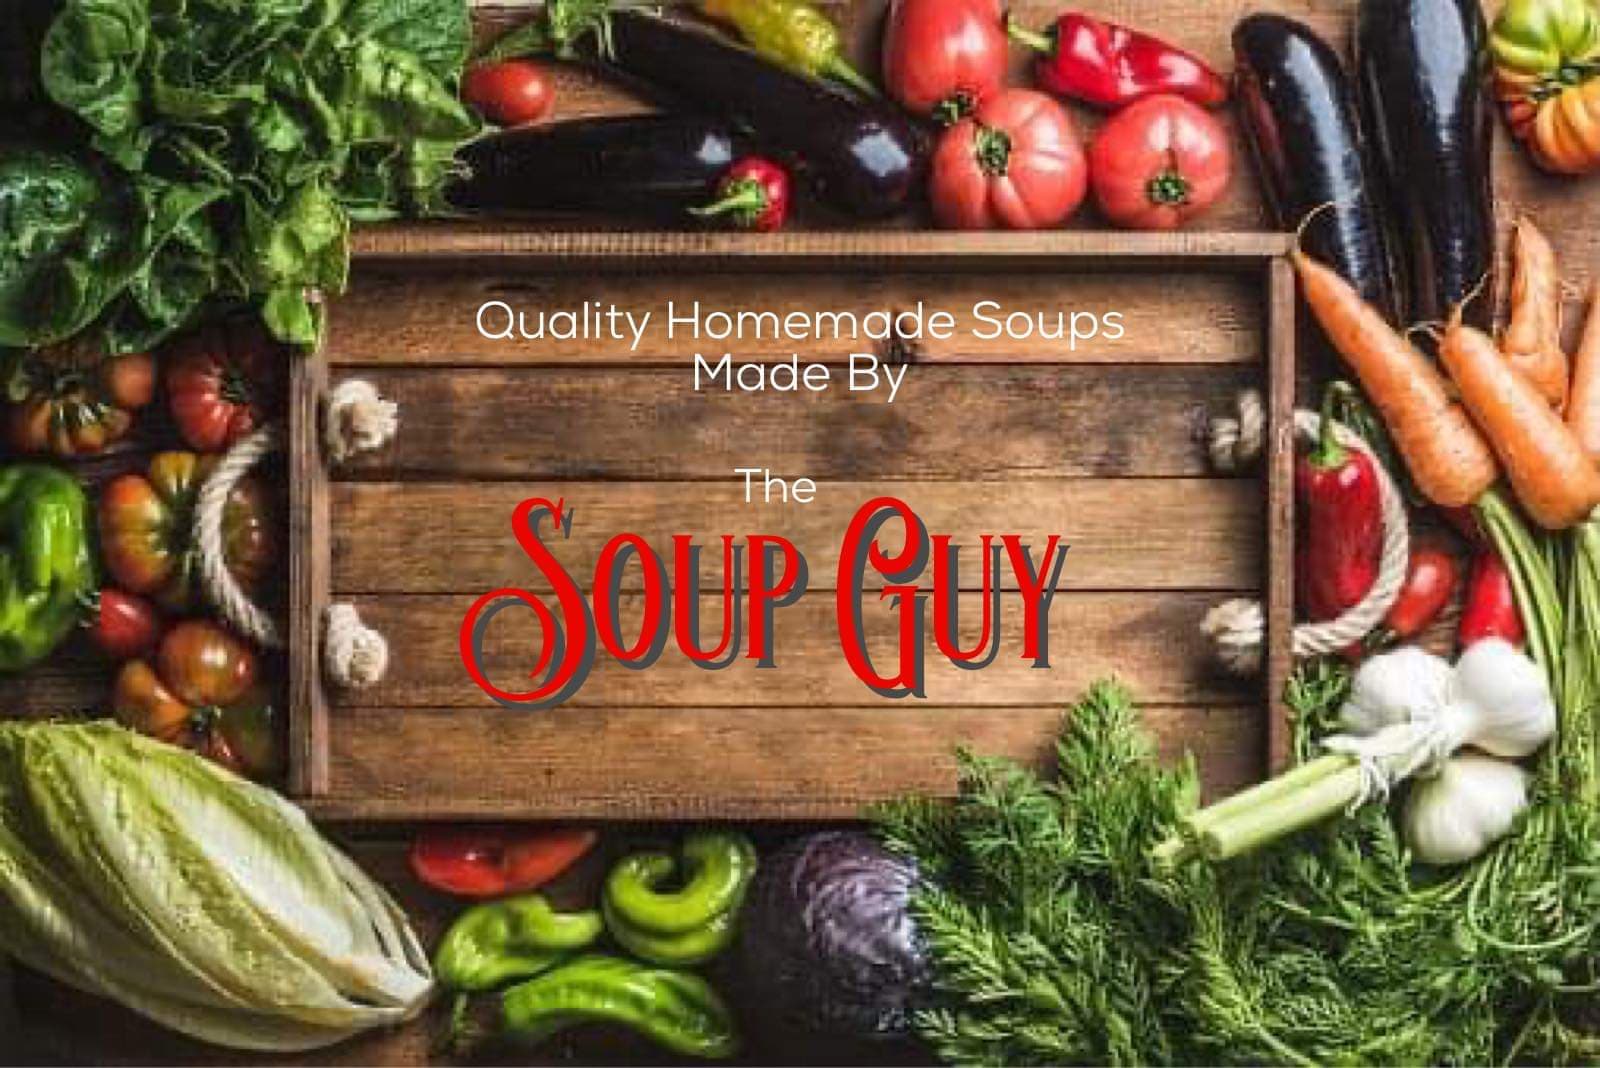 Soup Guy